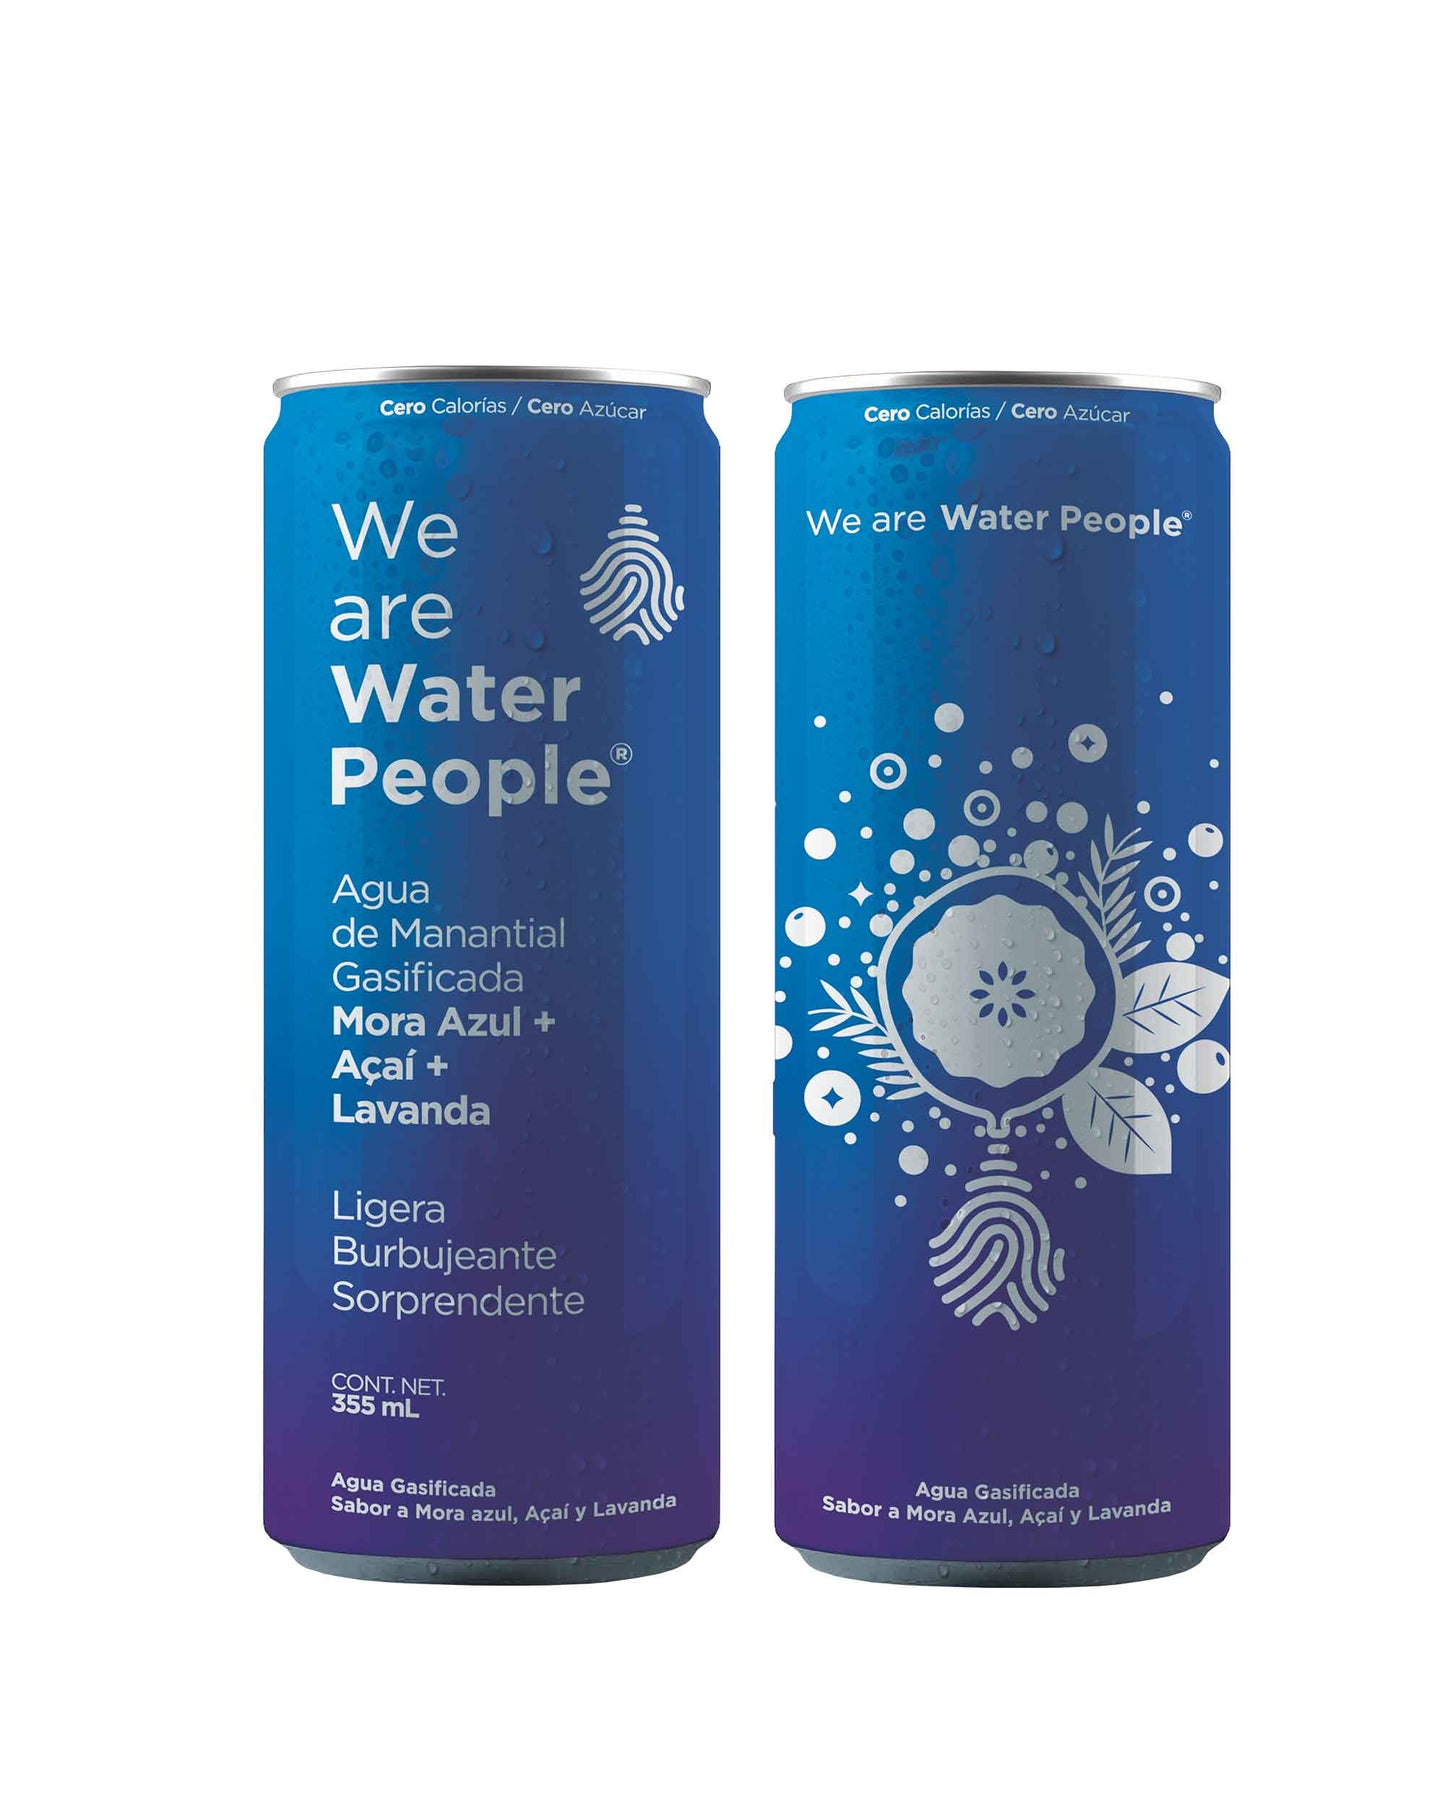 
                  
                    Agua Gasificada Sabor Mora Azul, Acaí y Lavanda - Pack de 24 latas de 355 ml
                  
                